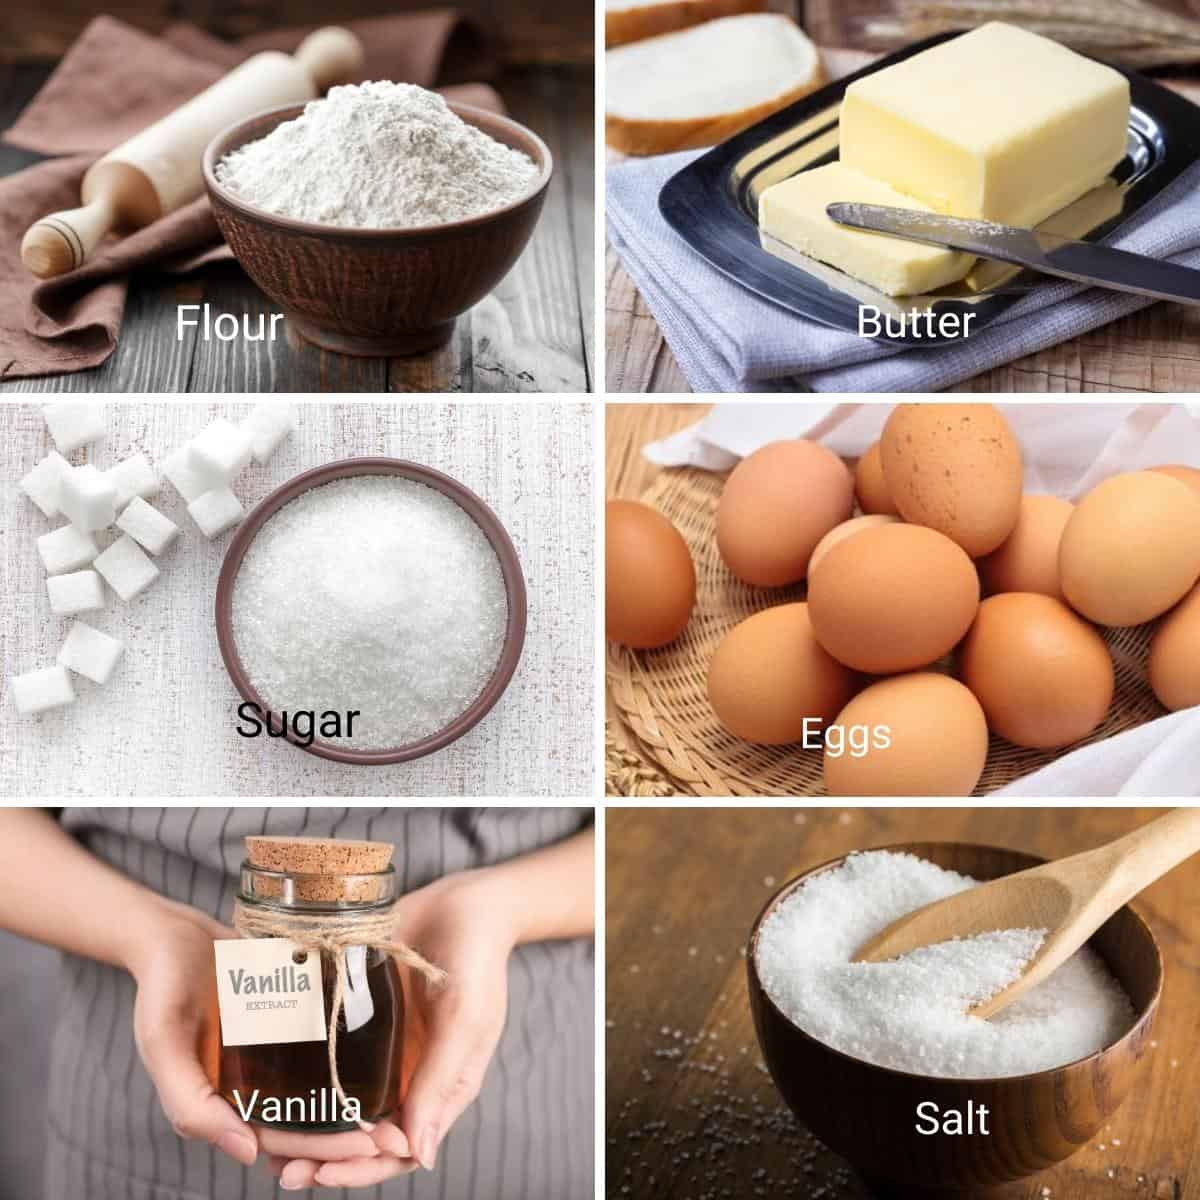 Ingredients for making sugar cookies.